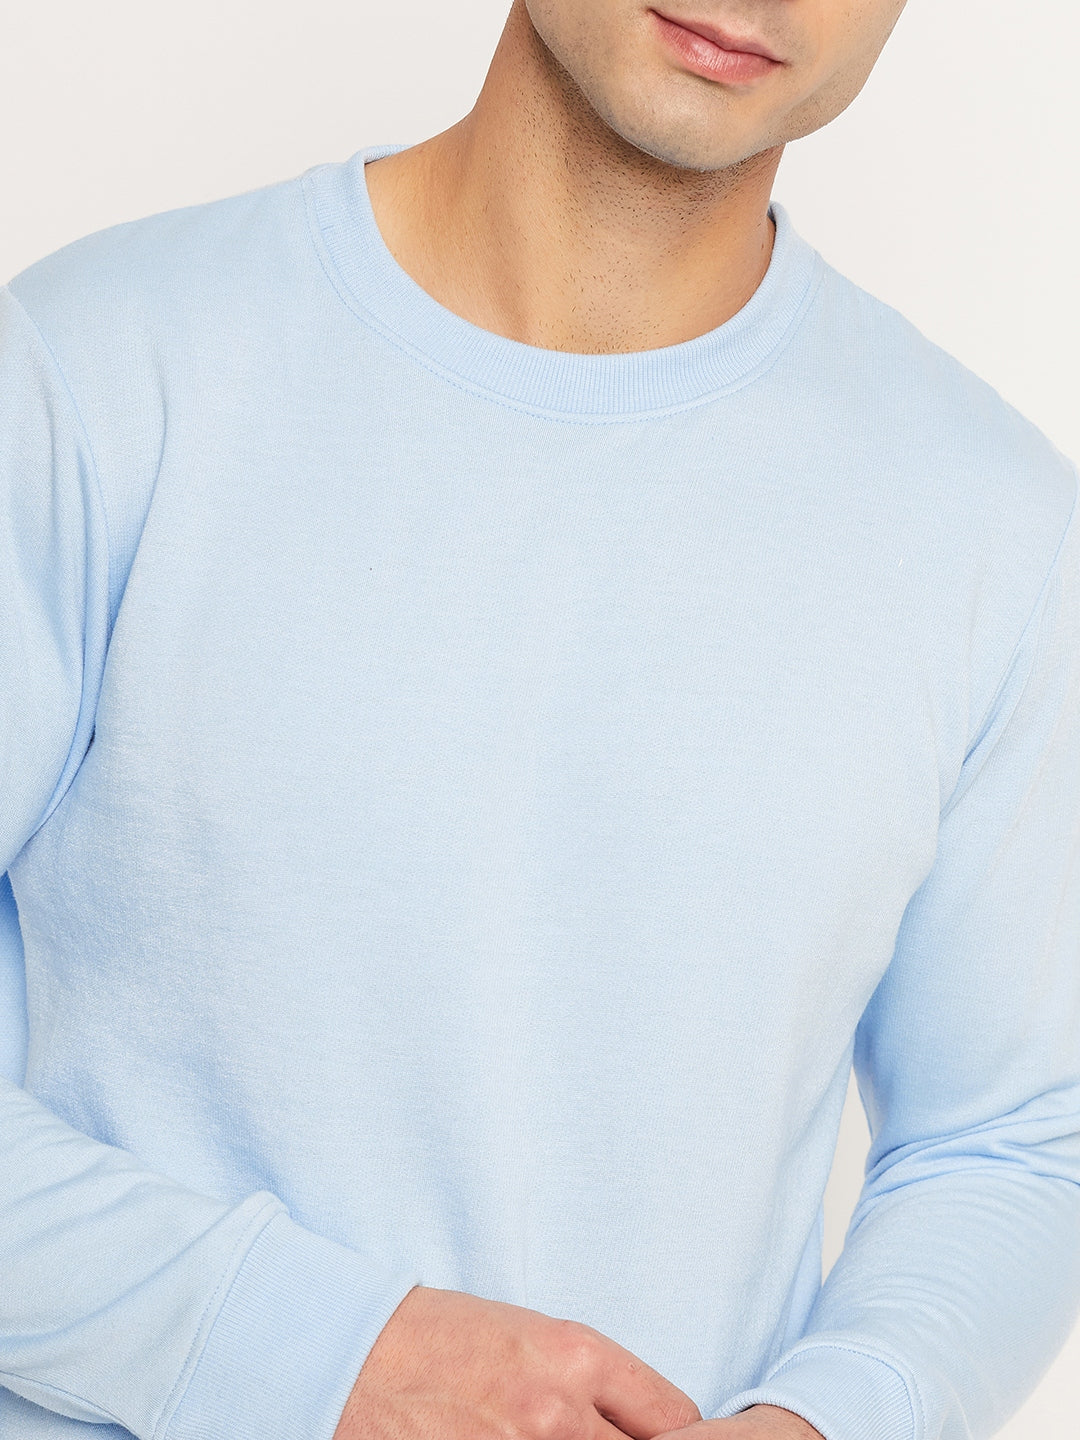 Men's Sweatshirt Sky Blue